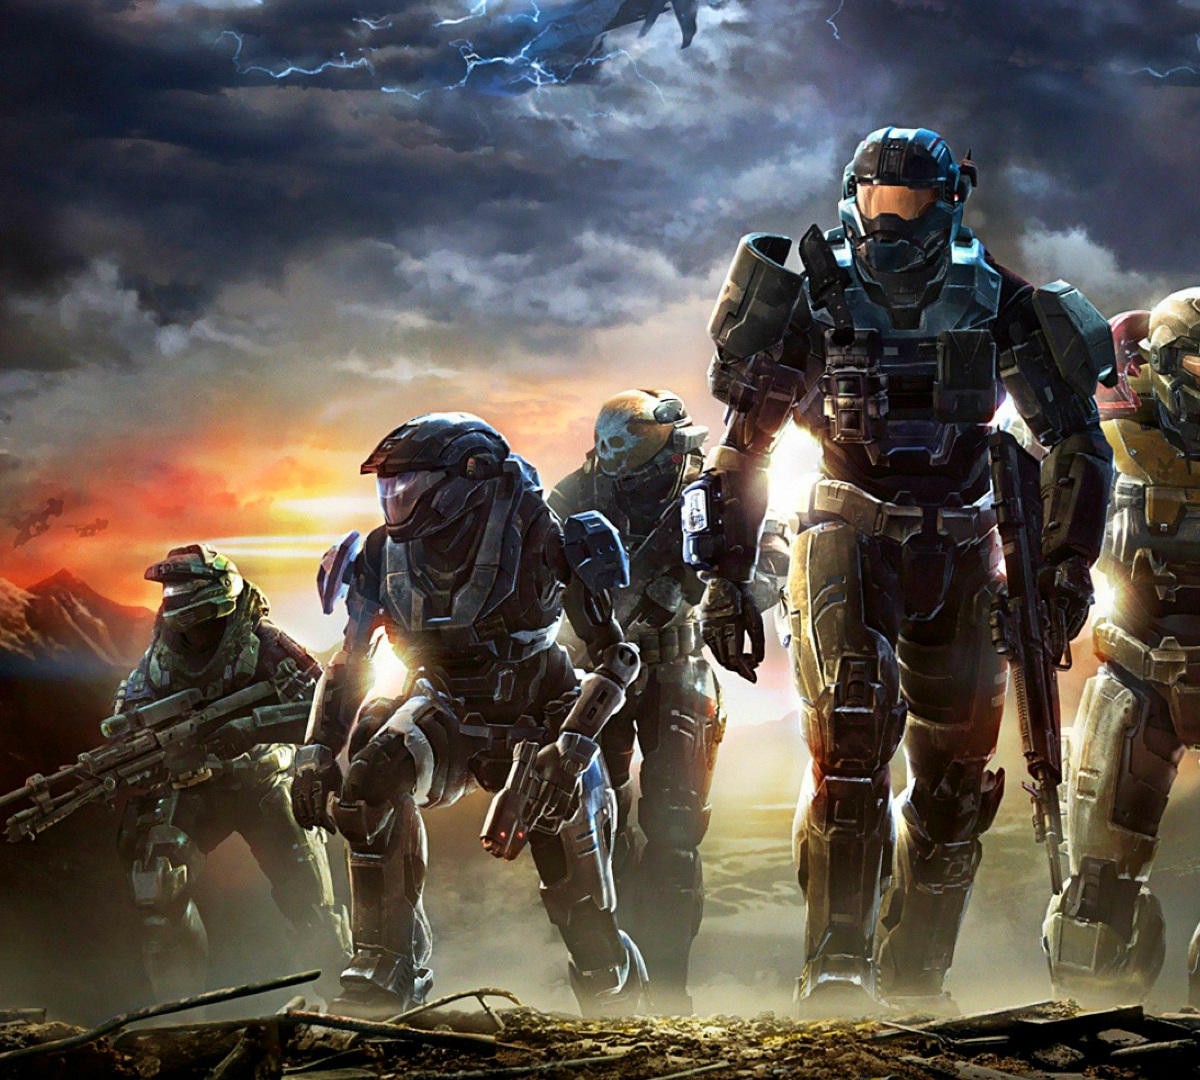 Análise: Série Halo acabou sendo Halo até demais - Última Ficha